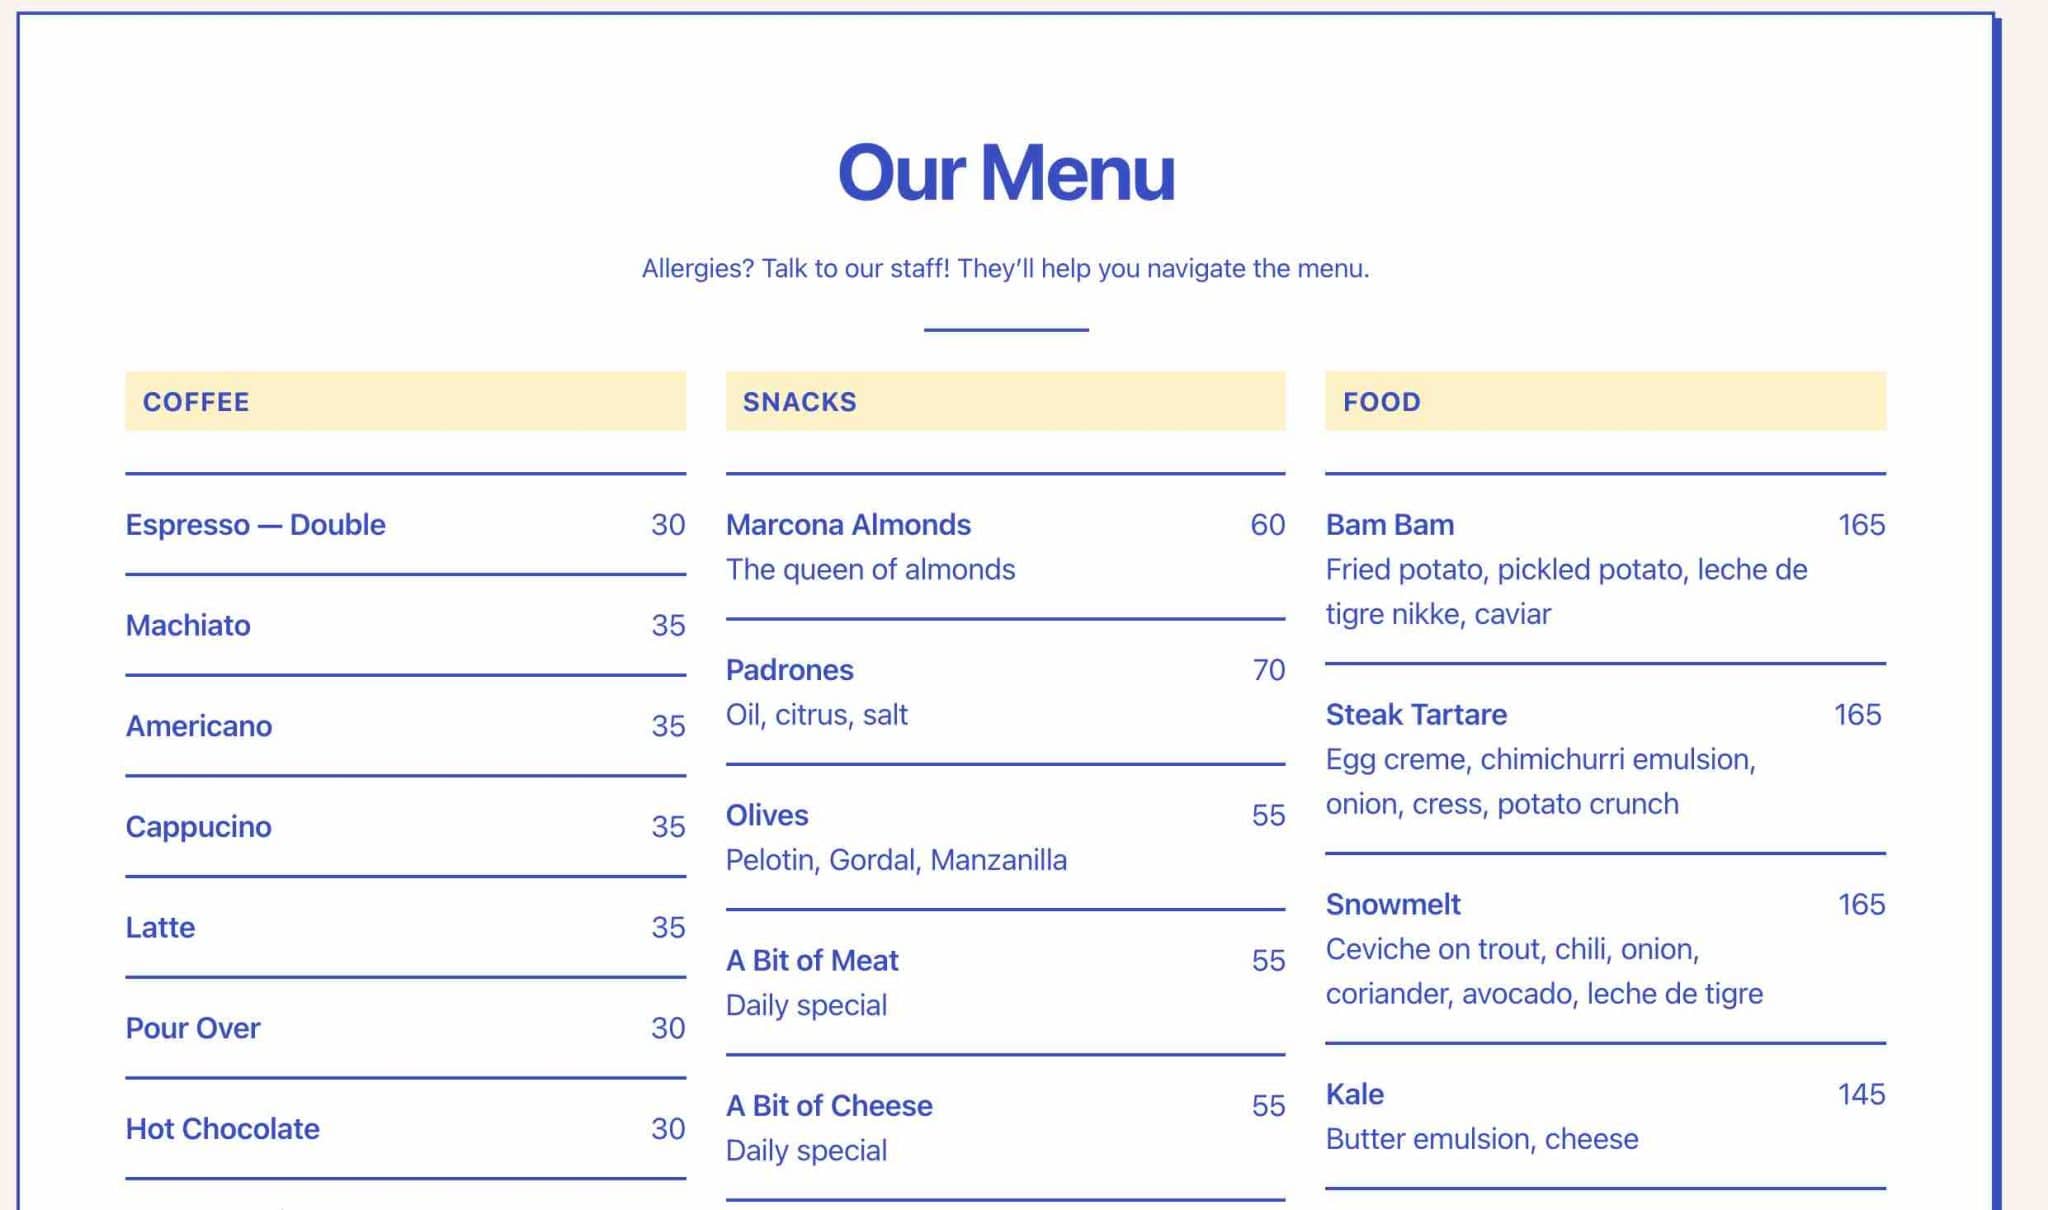 Une composition présentant un exemple-type de menu pour un restaurant.